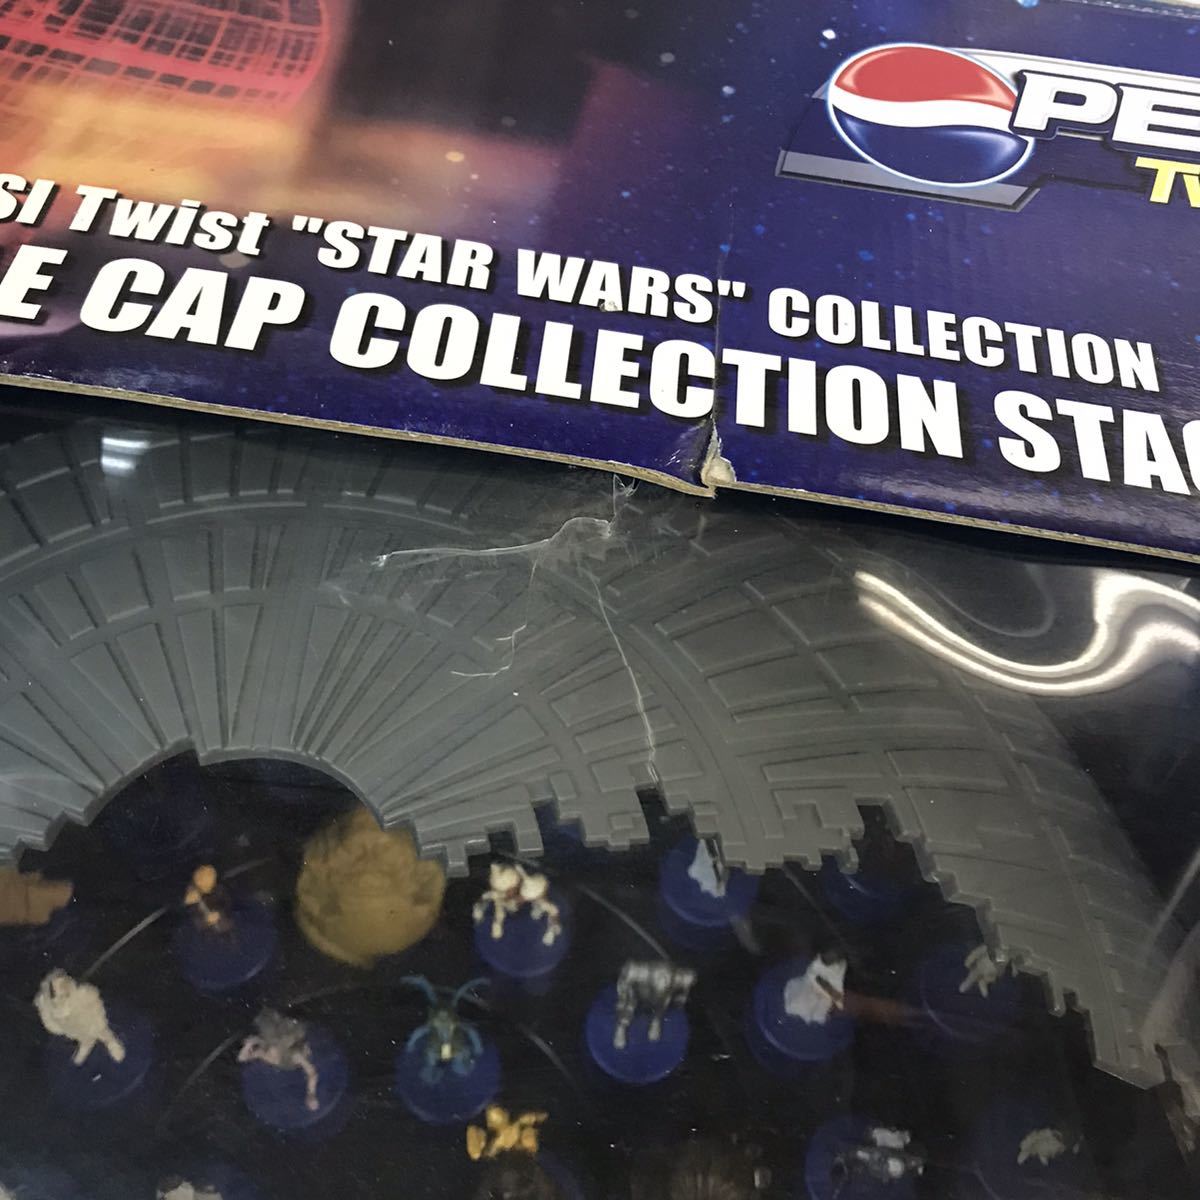  Pepsi кручение Звездные войны колпачок для бутылки коллекция stage колпачок для бутылки 60 шт имеется PEPSI STAR WARS